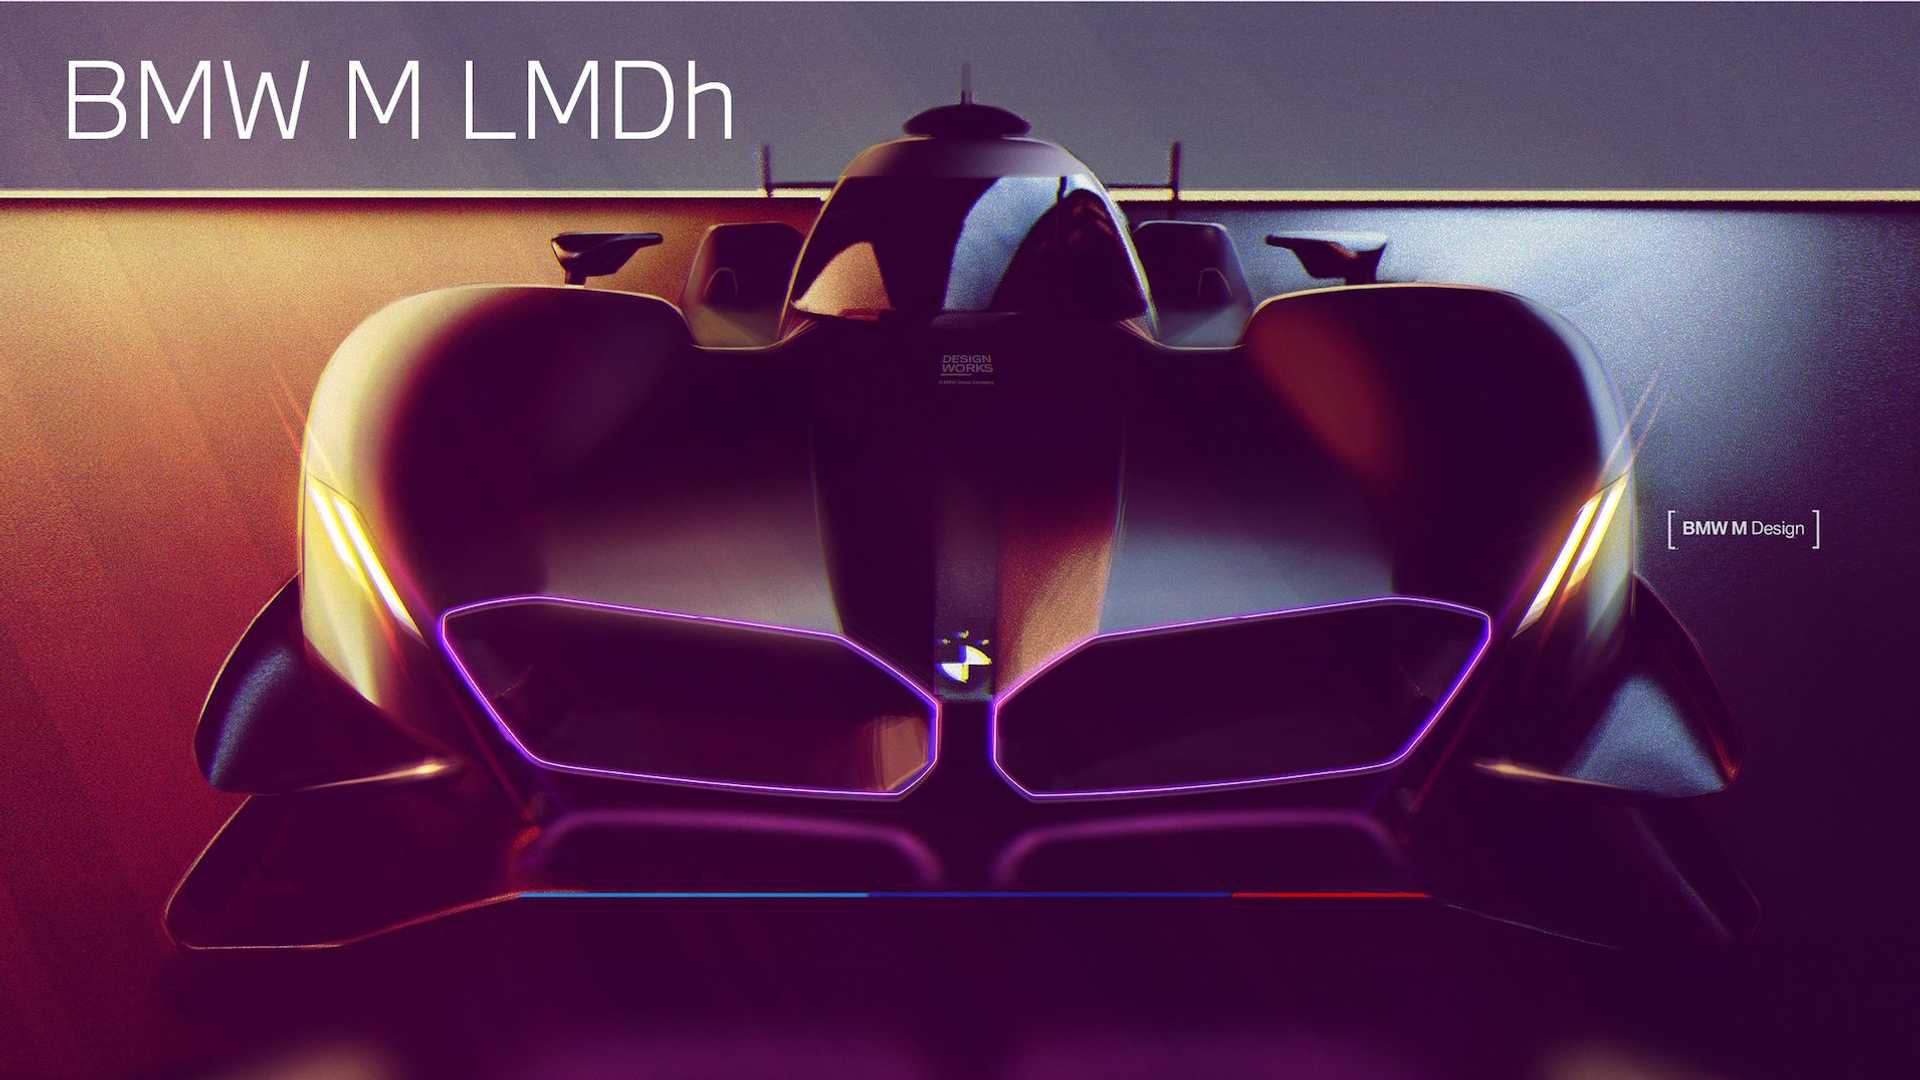 bmw-m-lmdh-prototype-race-car-teaser.jpg